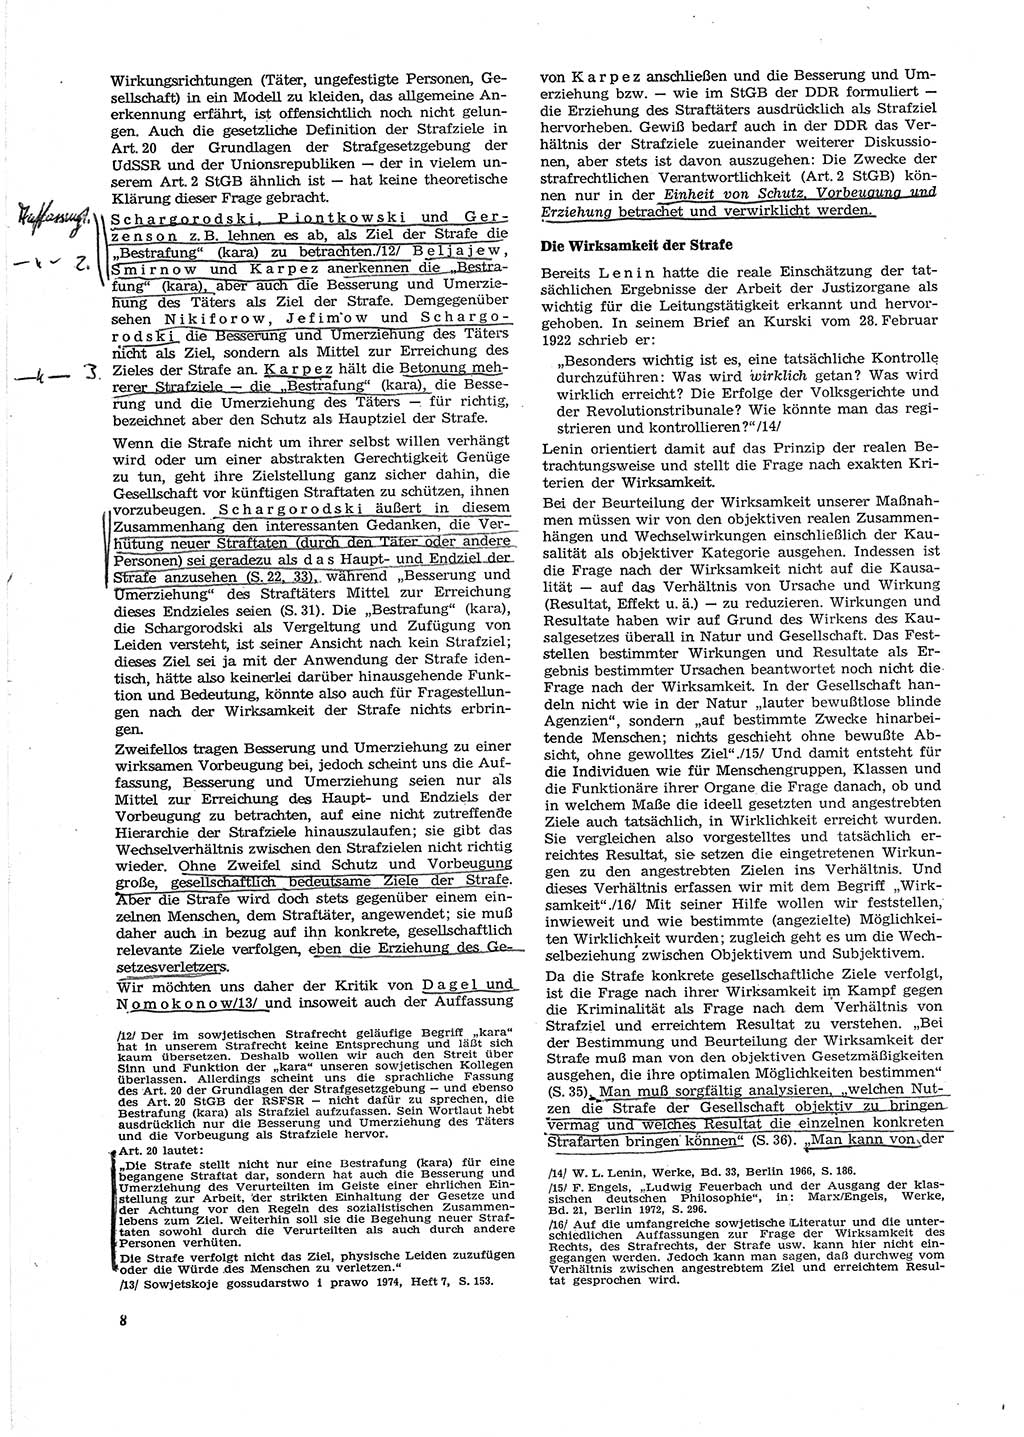 Neue Justiz (NJ), Zeitschrift für Recht und Rechtswissenschaft [Deutsche Demokratische Republik (DDR)], 29. Jahrgang 1975, Seite 8 (NJ DDR 1975, S. 8)